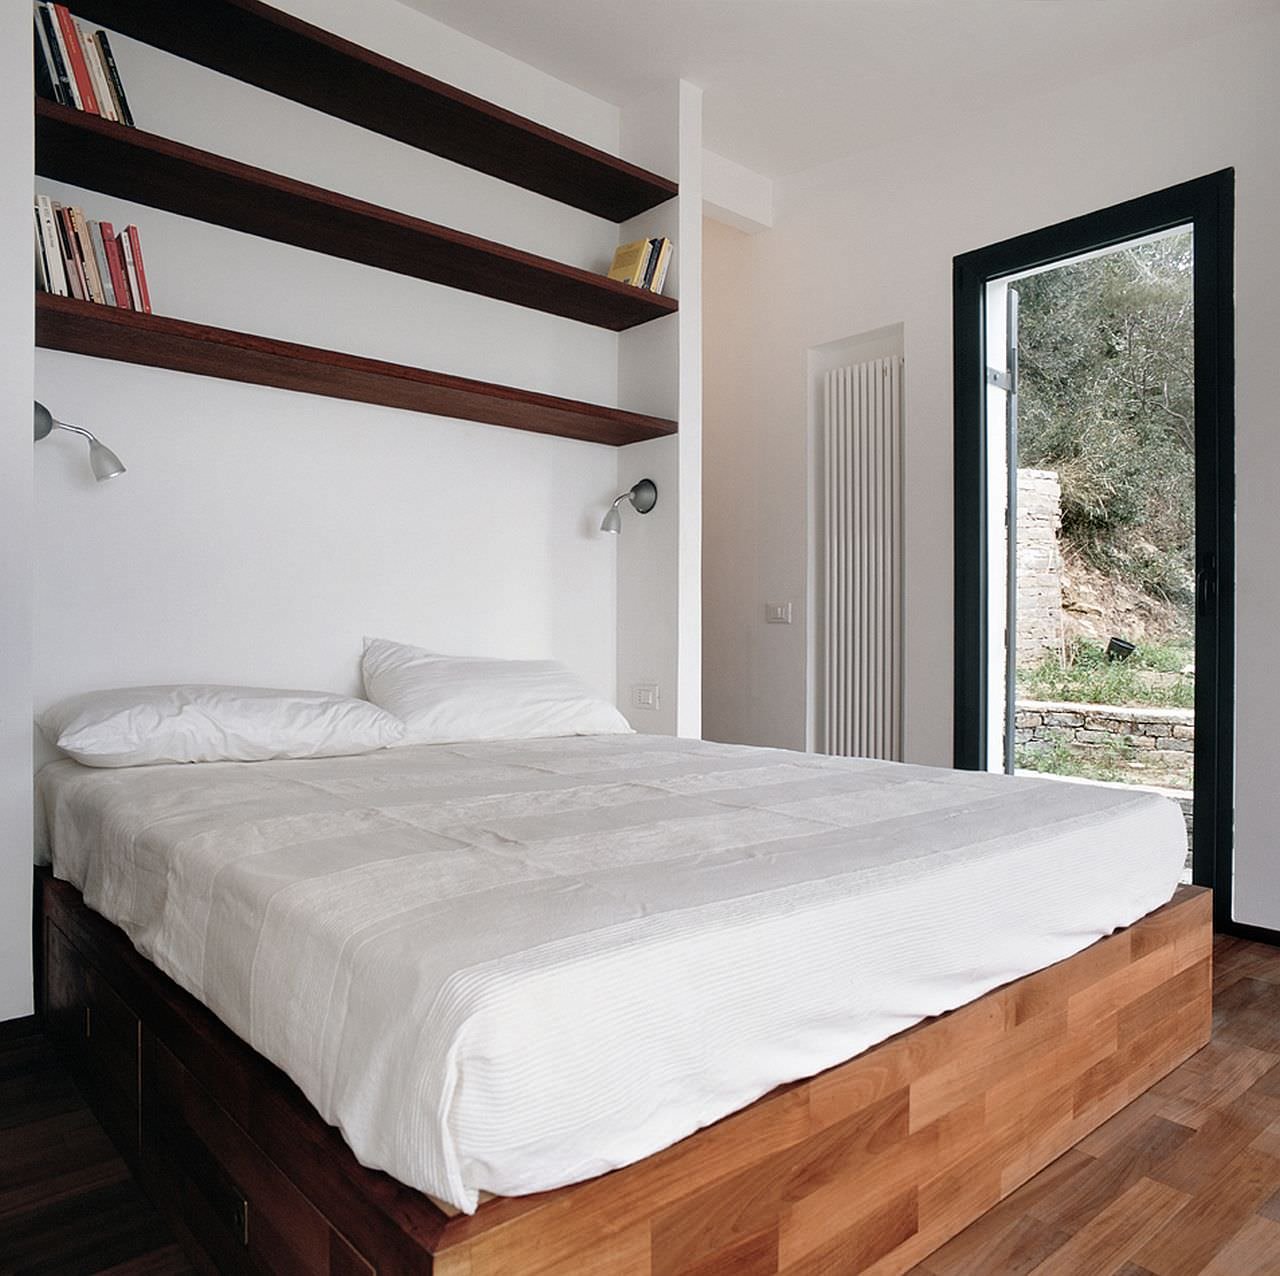 Camera da letto con grandi contenitori per sfruttare al meglio il piccolo spazio disponibile in questo piccolo appartamento di 35 mq